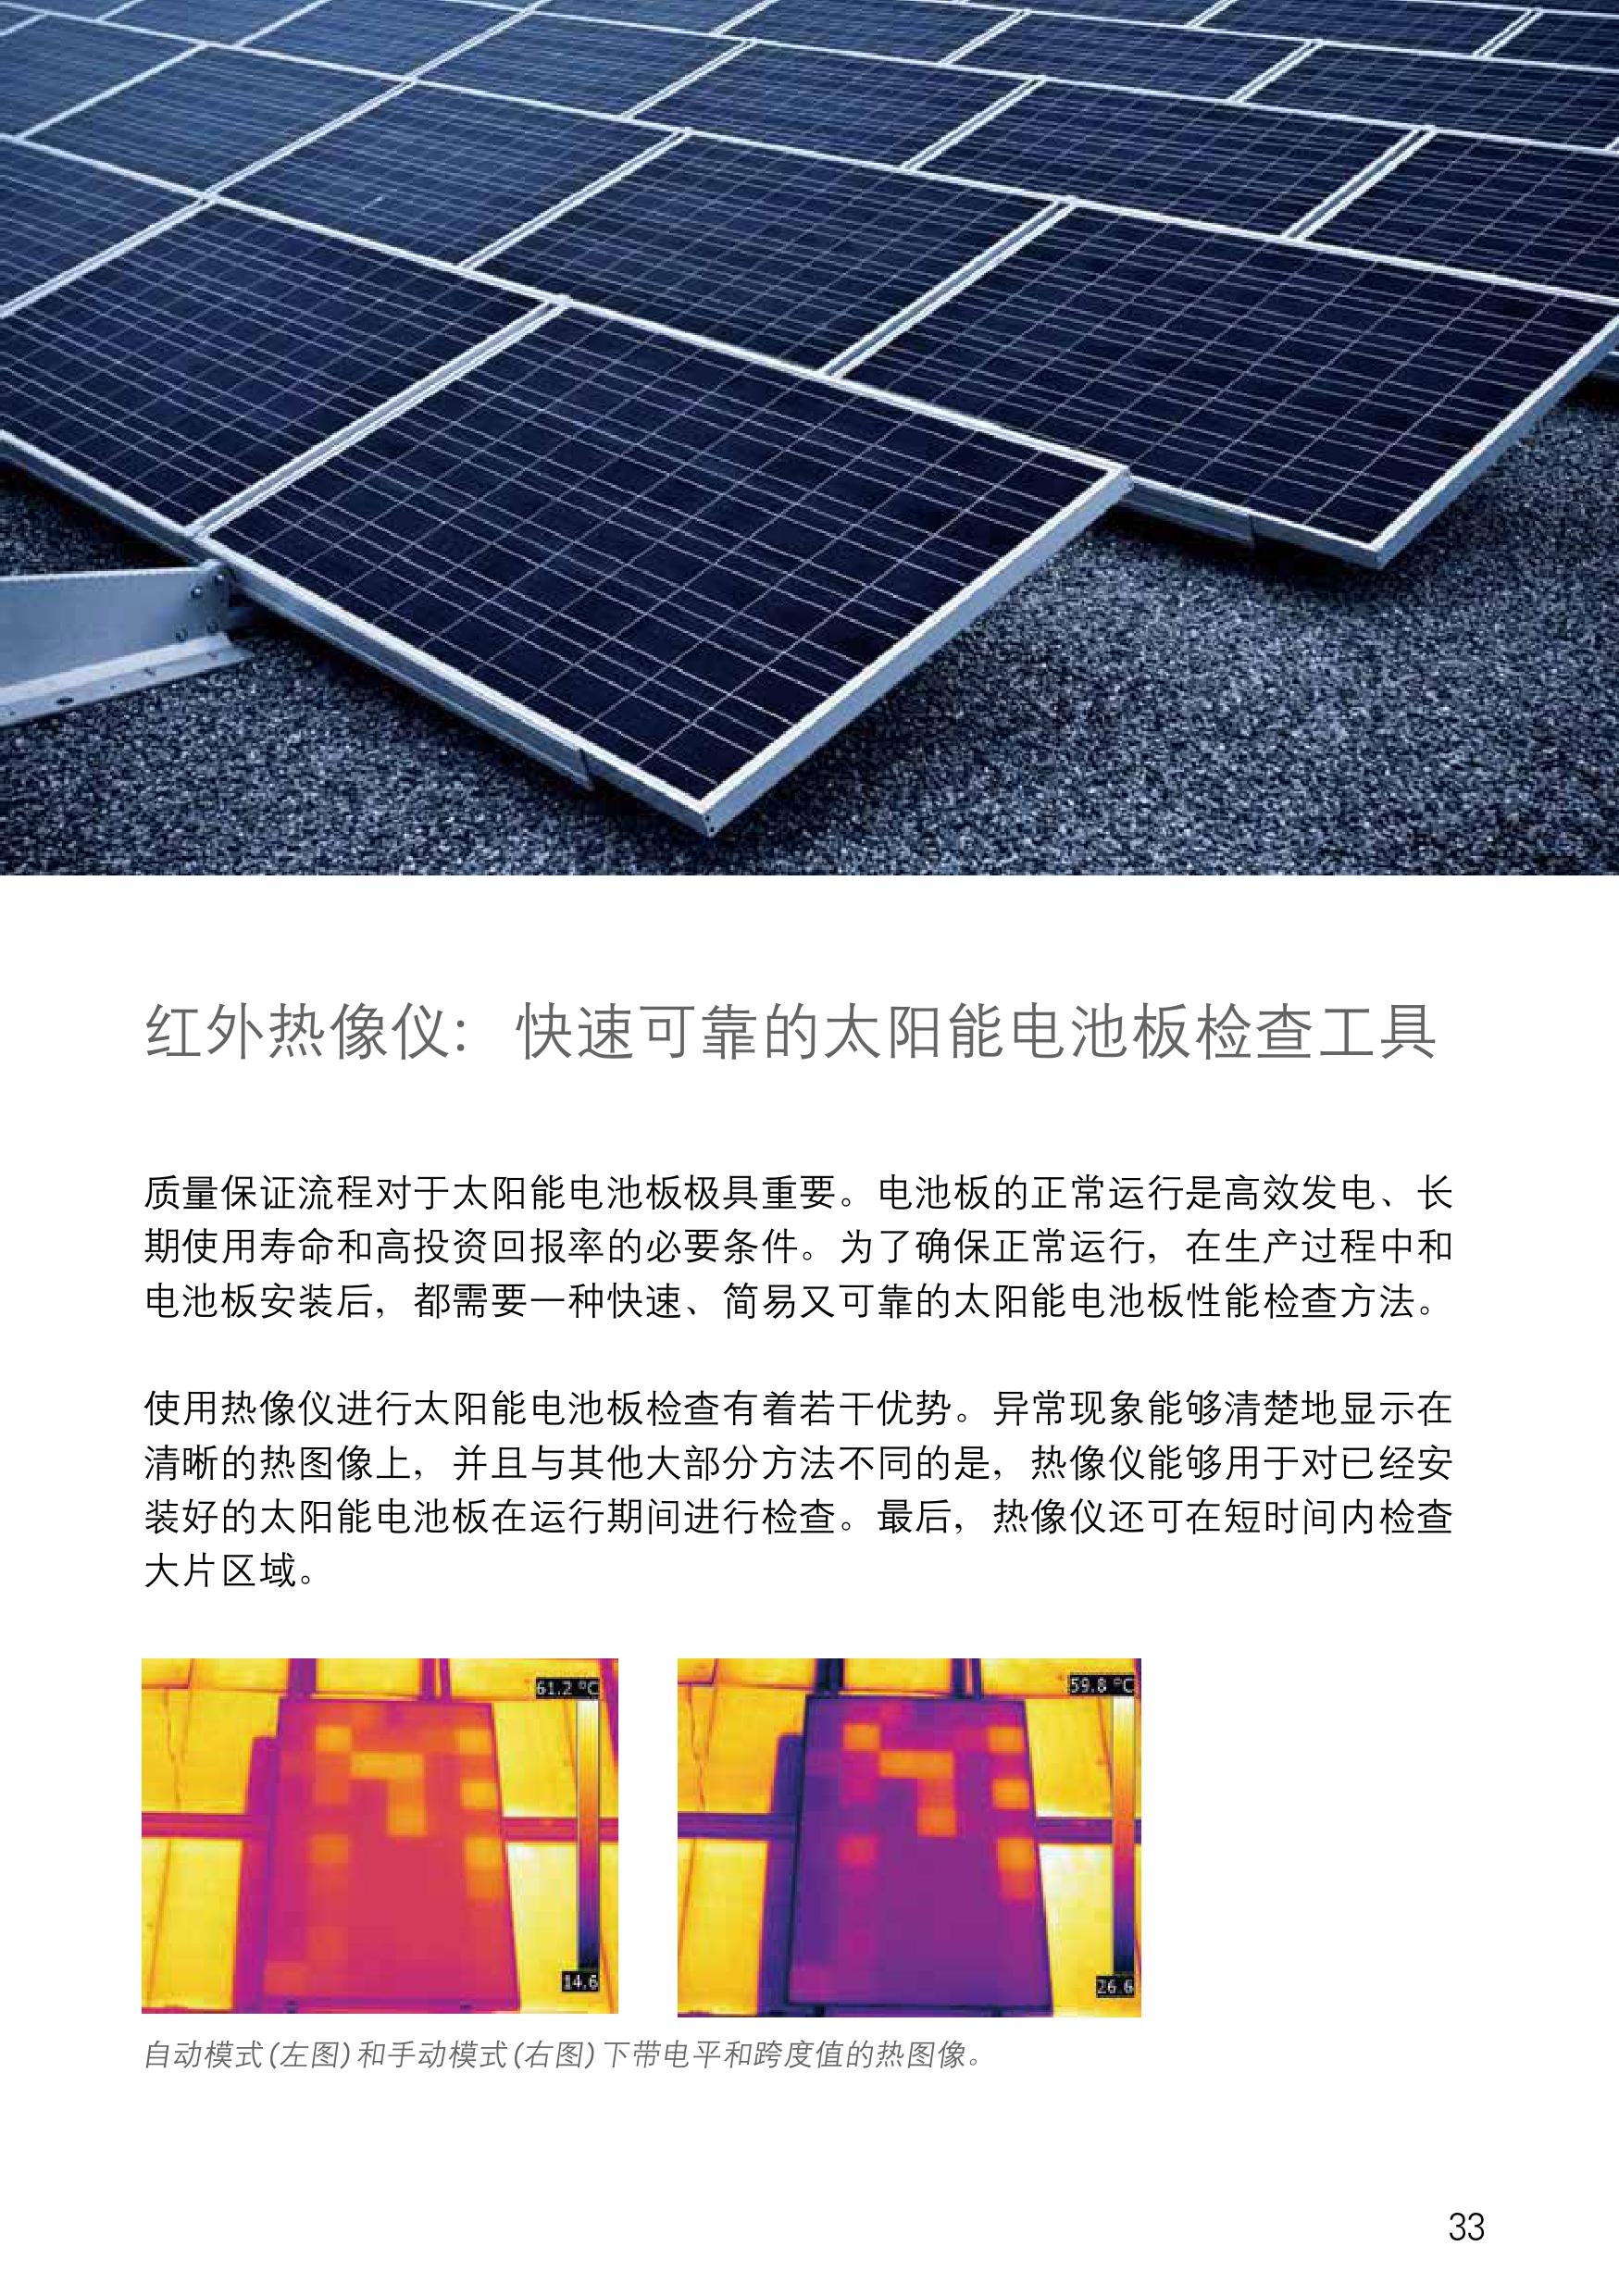 菲力尔：红外热像仪快速可靠的太阳能电池板检查工具